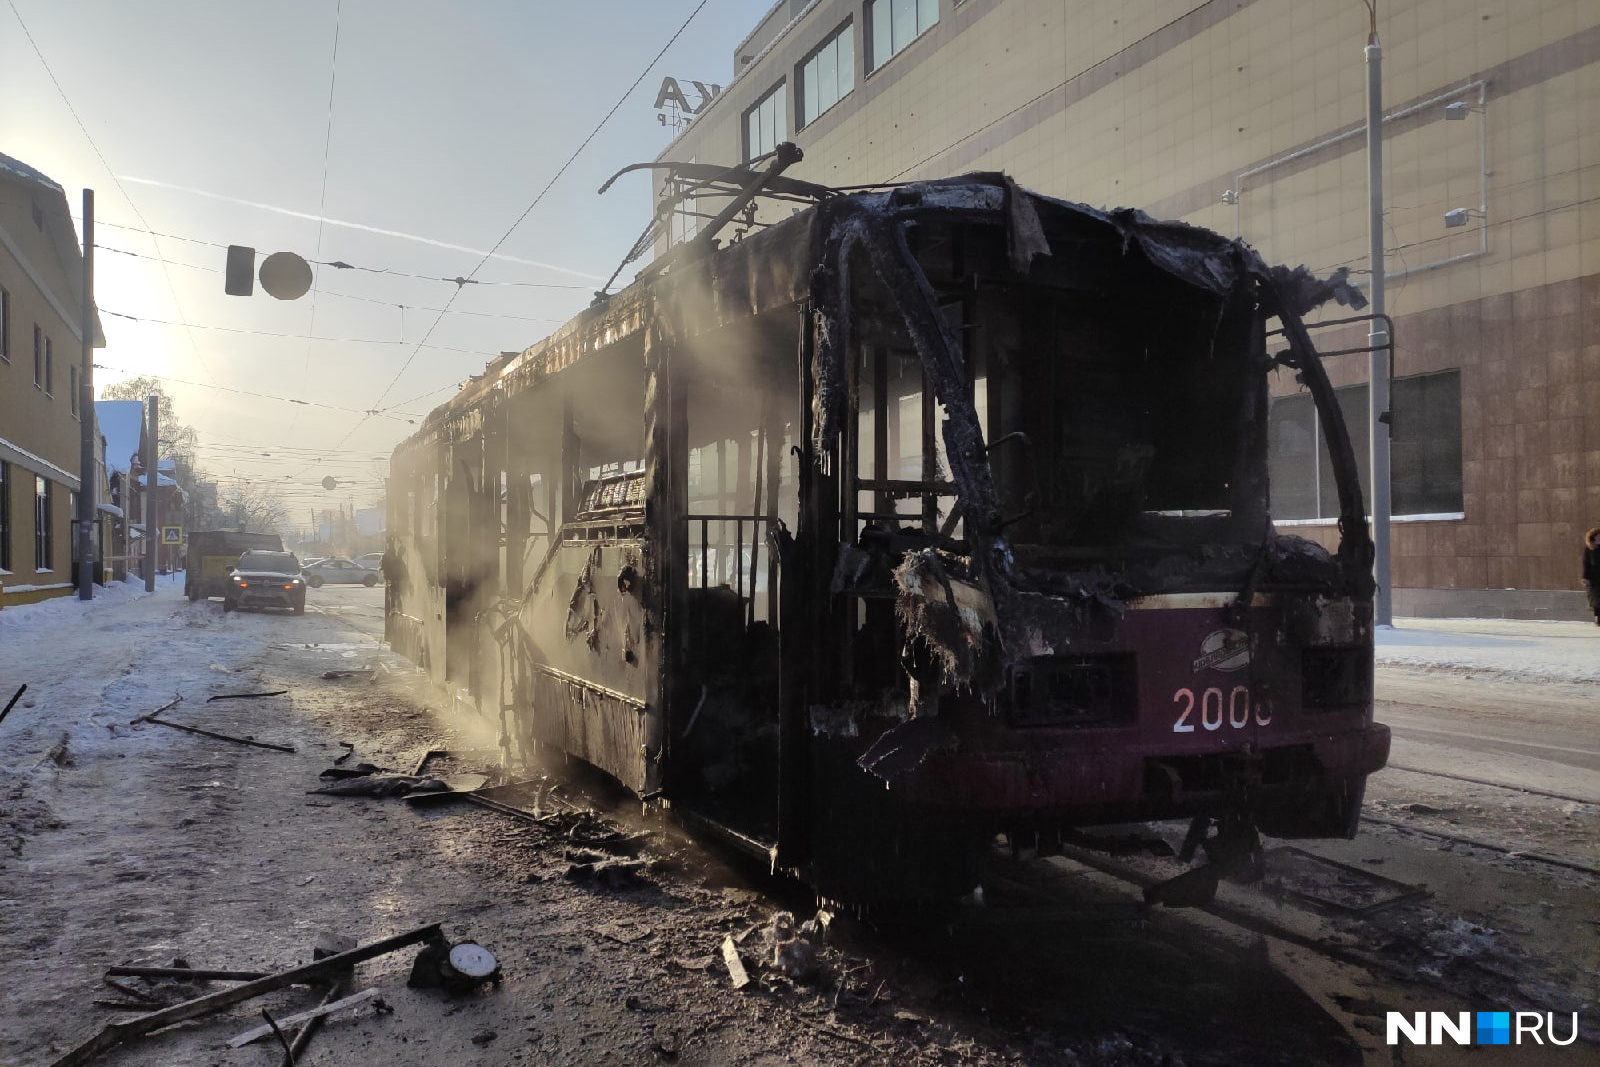 Сгорел трамвай в Нижнем Новгороде 23 декабря. Пожар трамвая в Нижнем Новгороде. В Нижнем сгорел трамвай. 23 декабря 2013